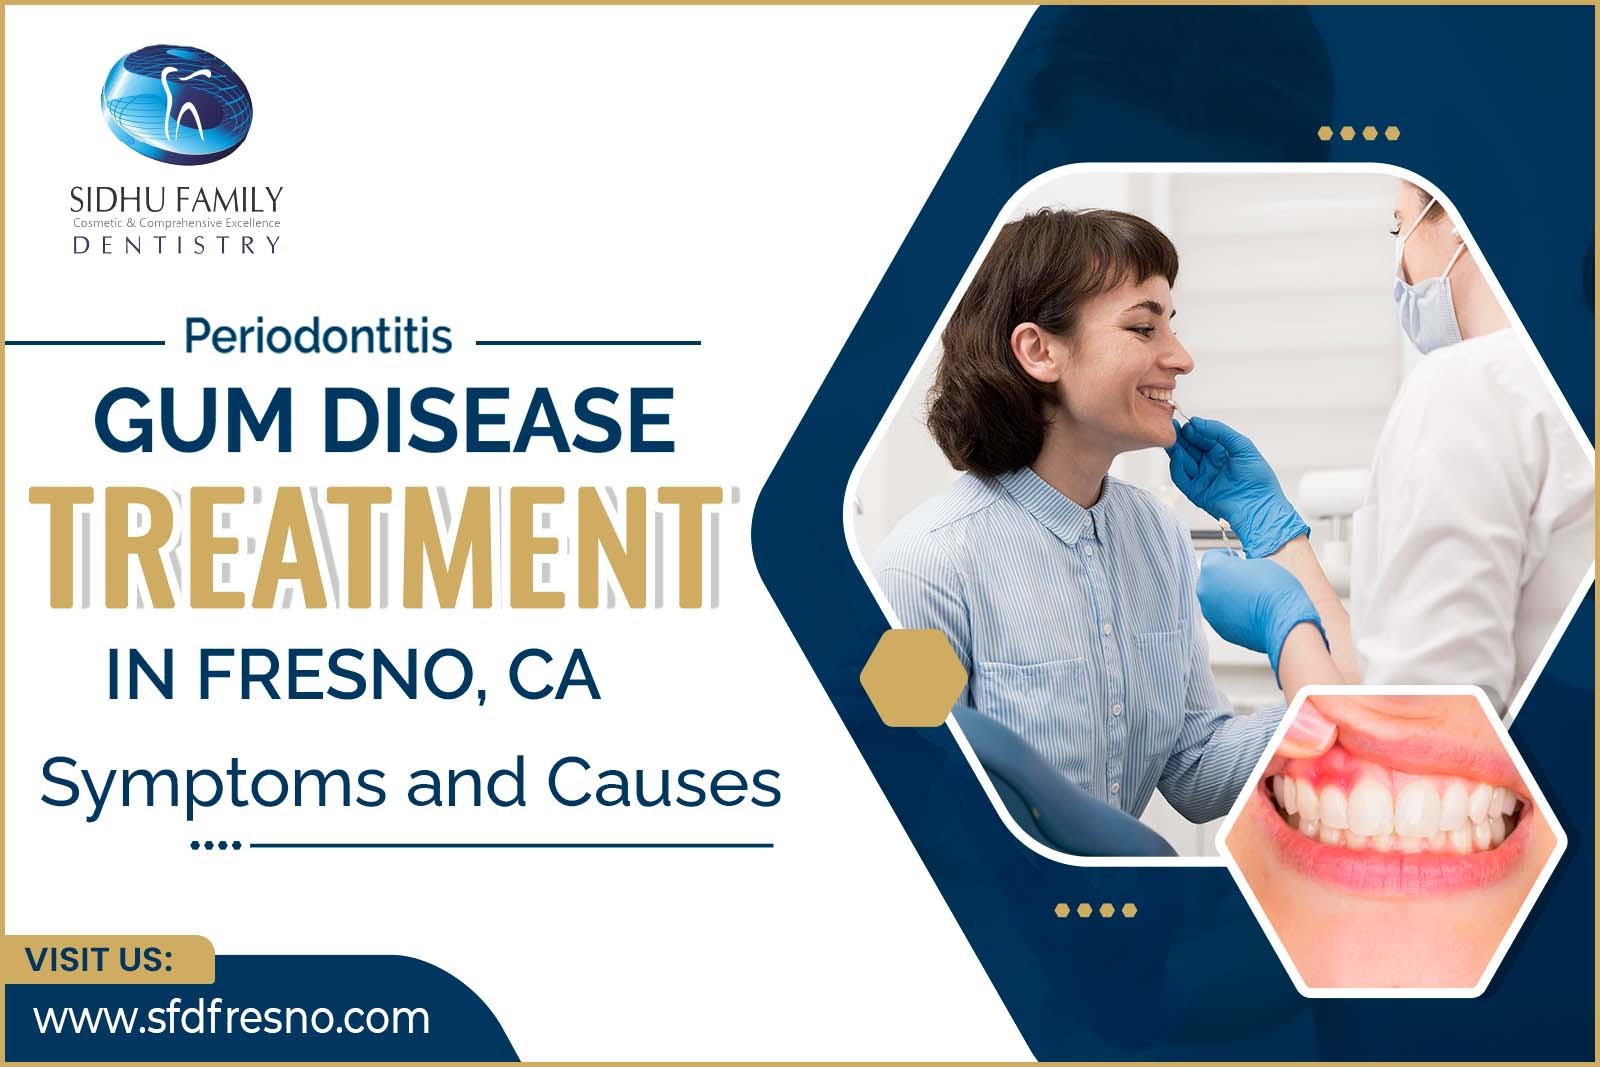 Gum Disease Treatment in Fresno, CA